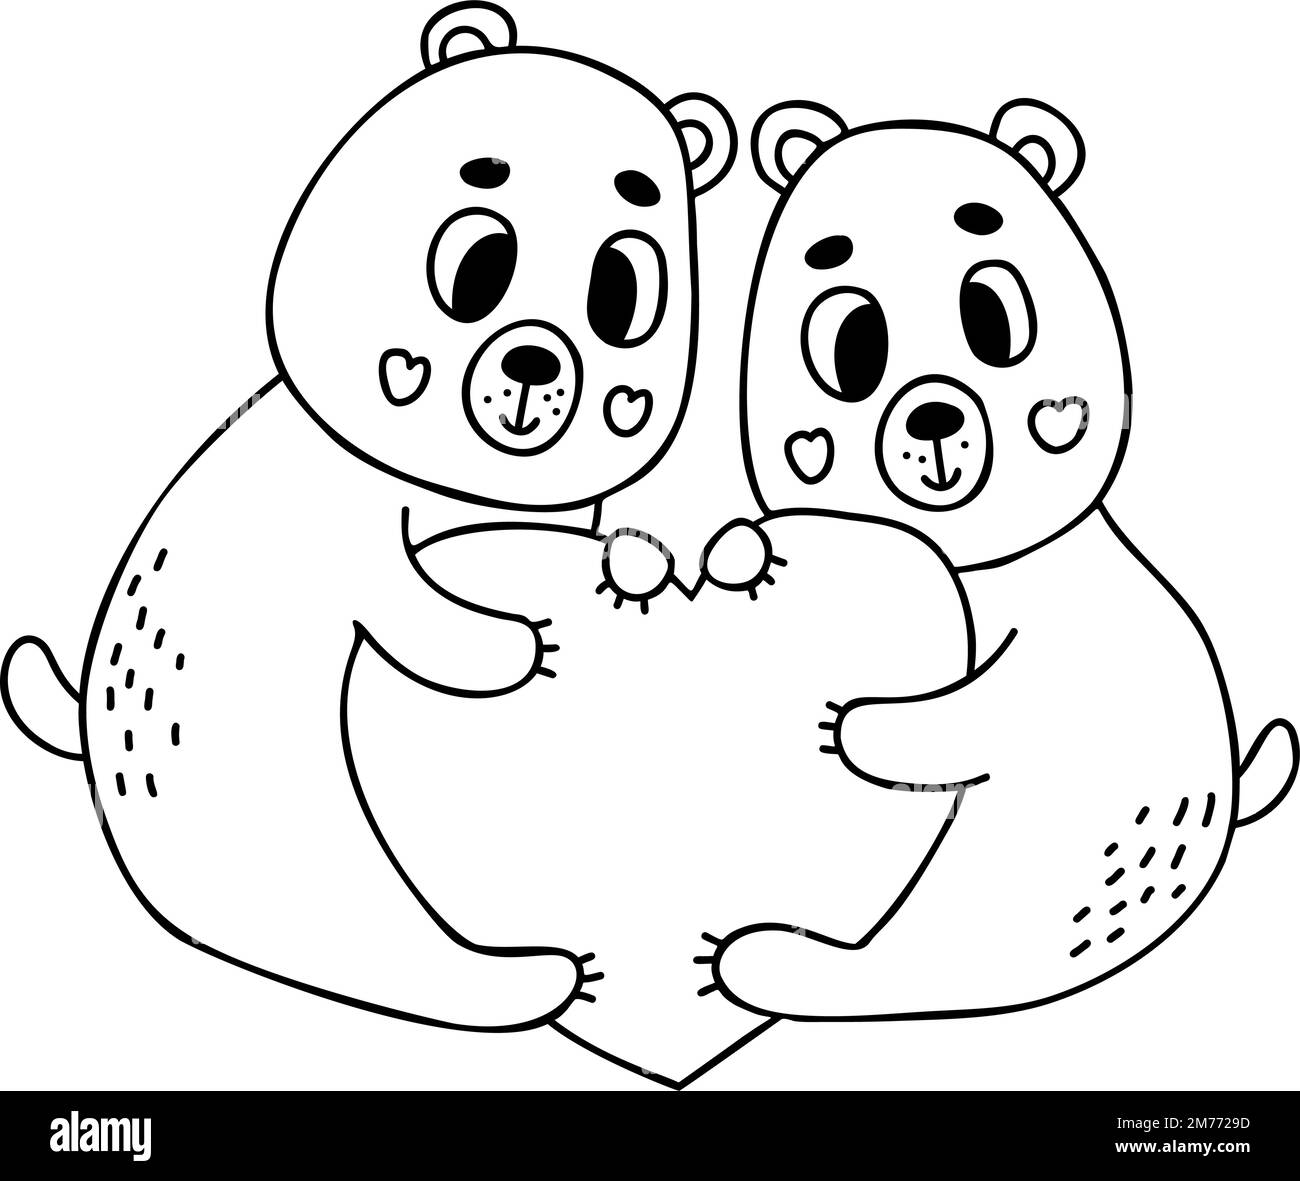 Ein Paar Liebes-Teddybären mit großem Herz. Vektorgrafik im Kritzelstil. Umriss für Design, Dekor, Valentinskarten, Druck Stock Vektor